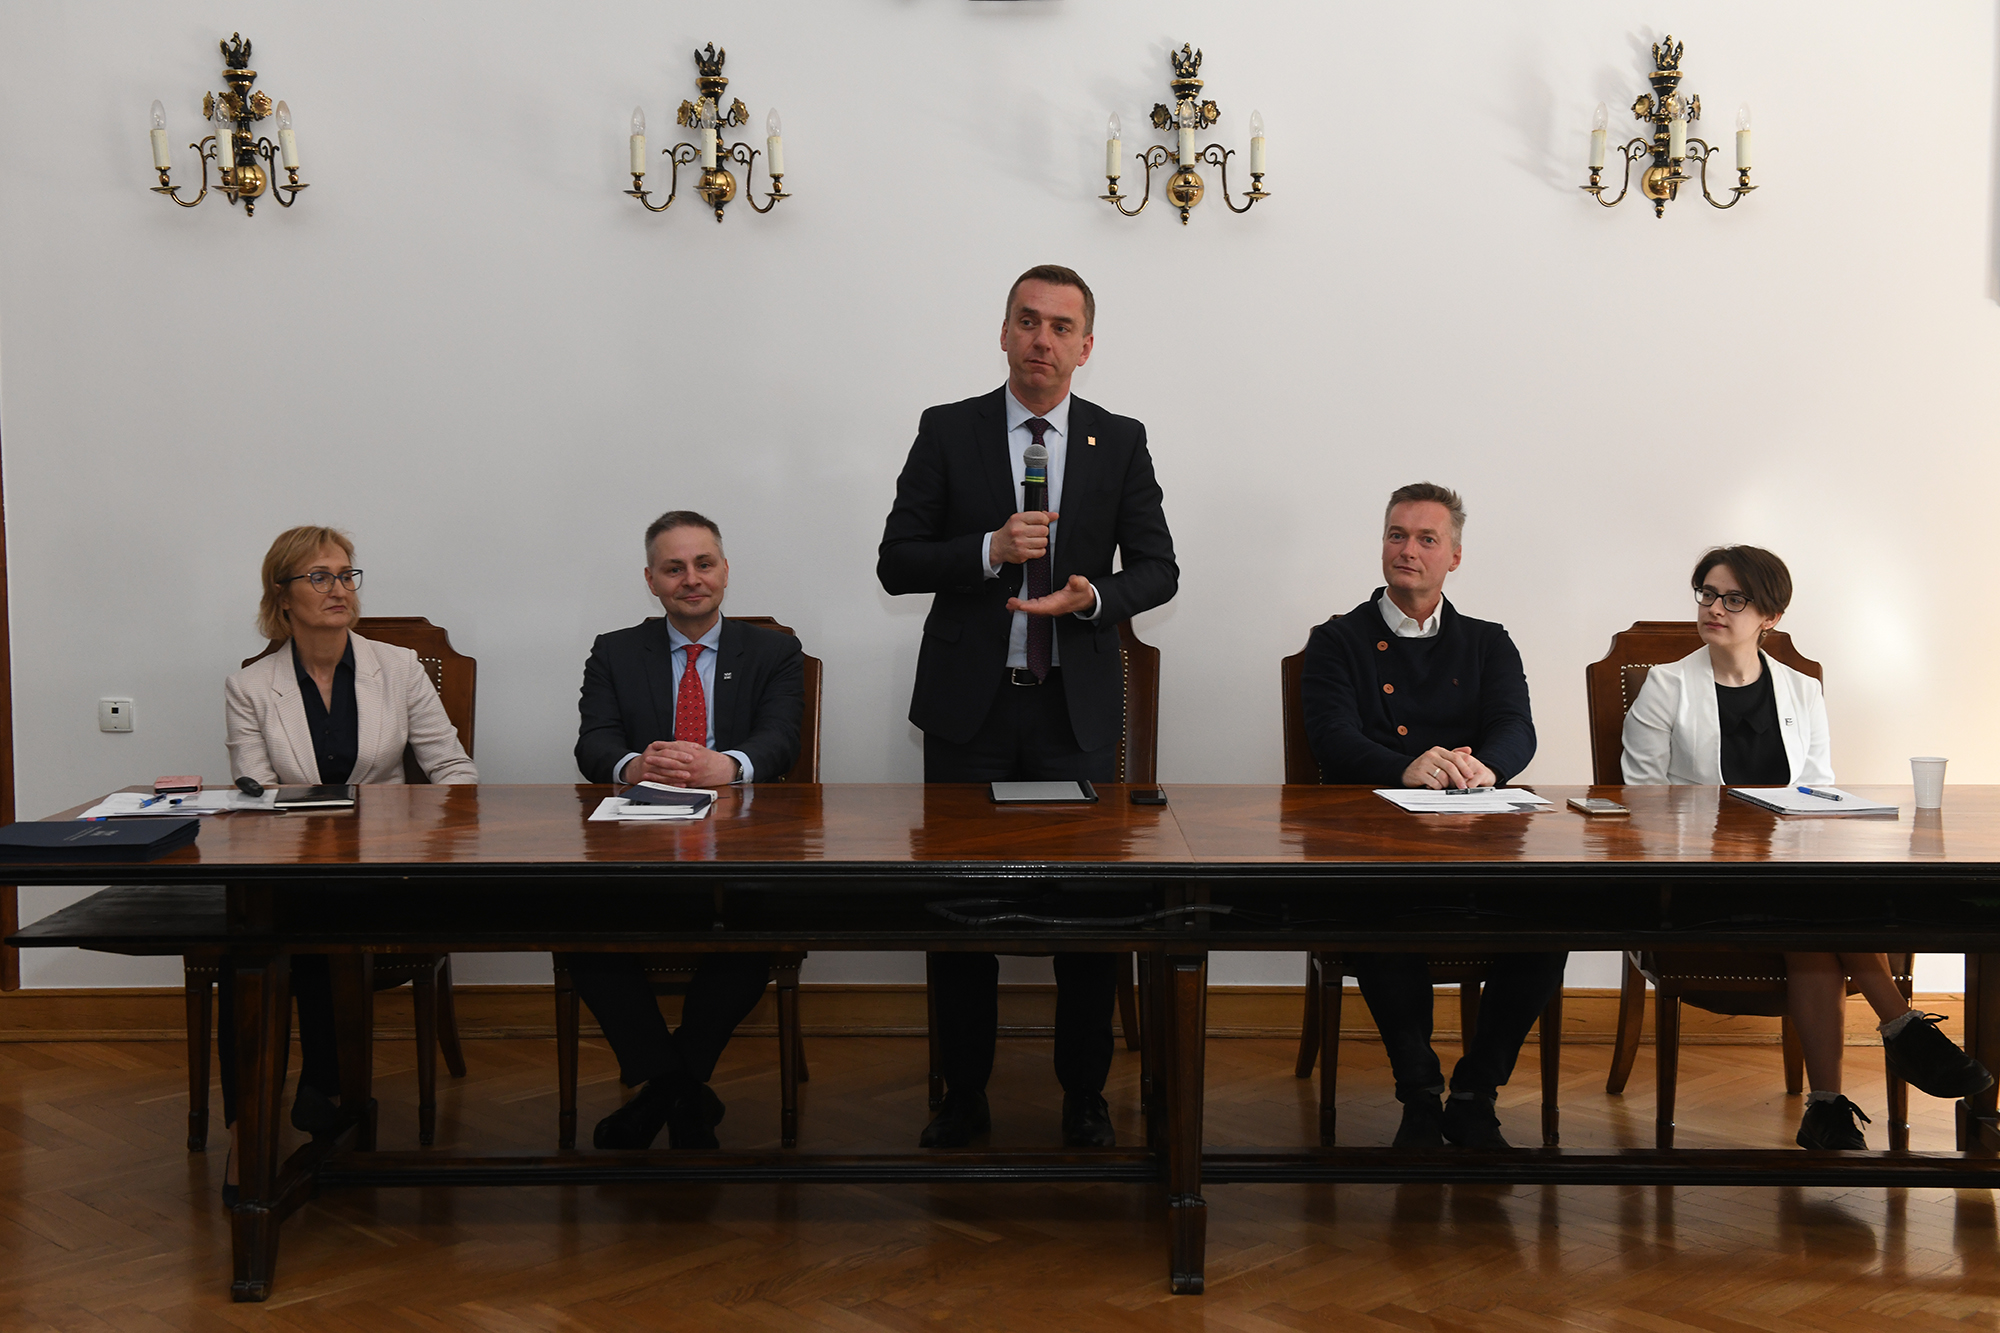 Stół prezydialny, w środku stoi i przemawia rektor PK prof. Andrzej Szarata, dwie osoby siedzą po jego lewej i po prawej stronie